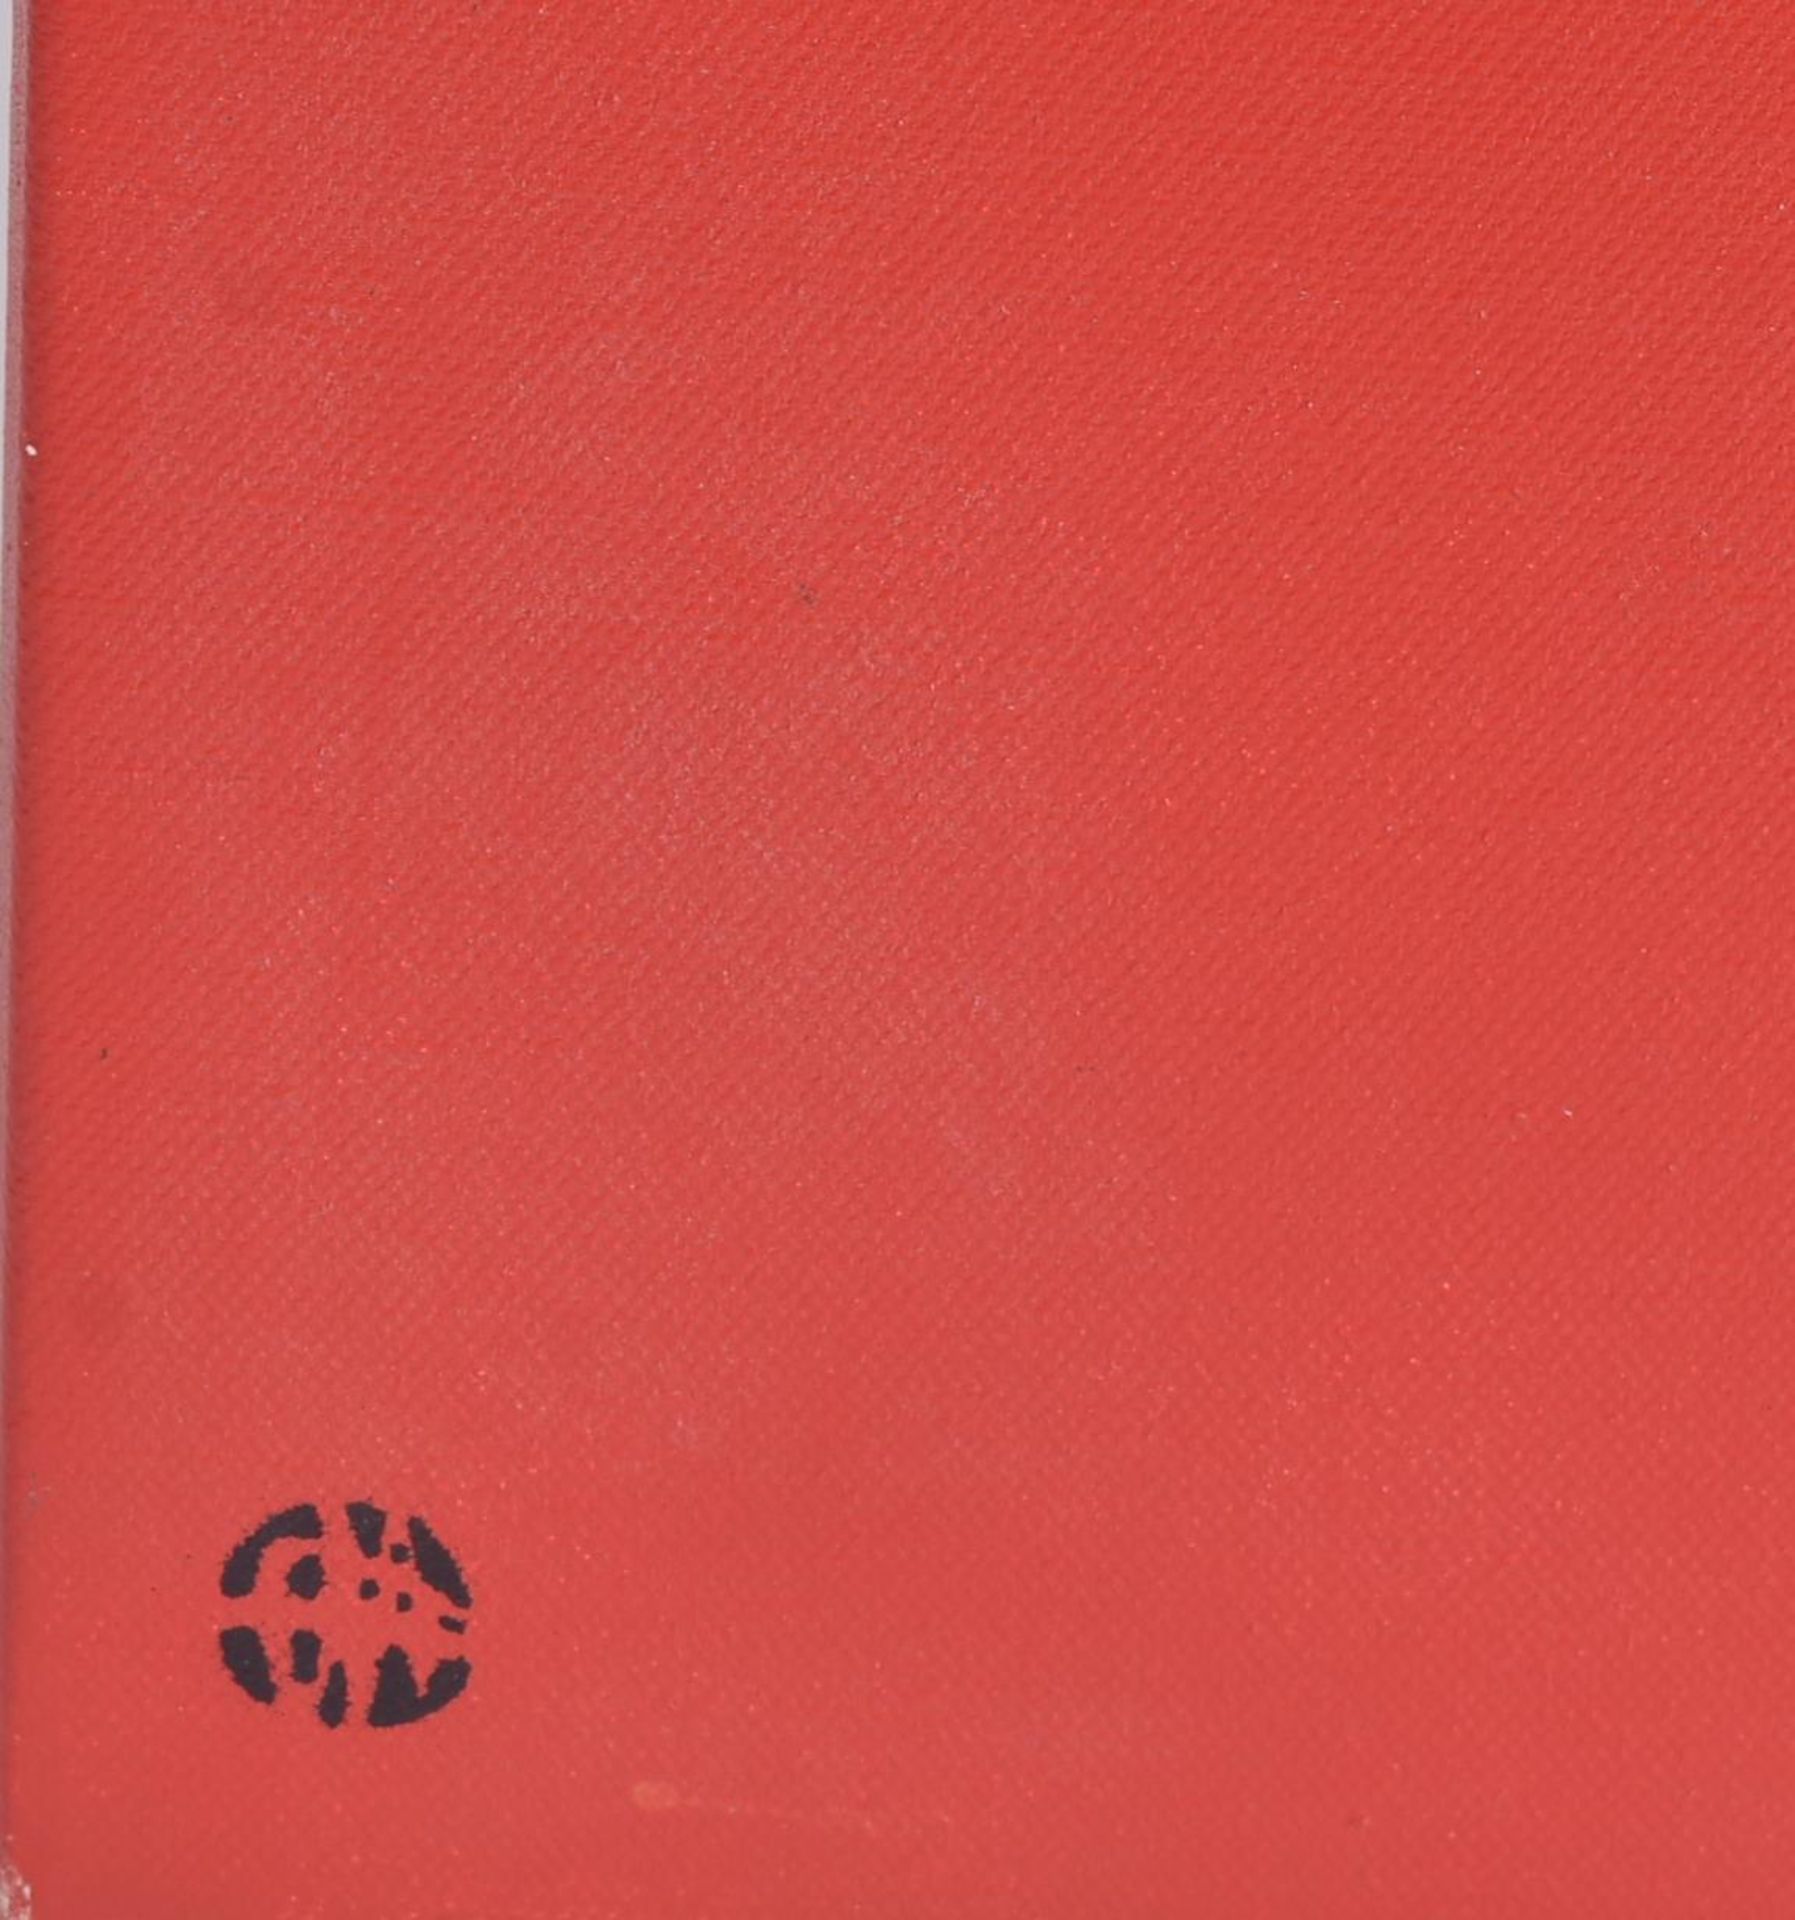 NICK WALKER (B.1969) - WHITE PANTIES, NIKERS (RED) 2002 - Image 4 of 5